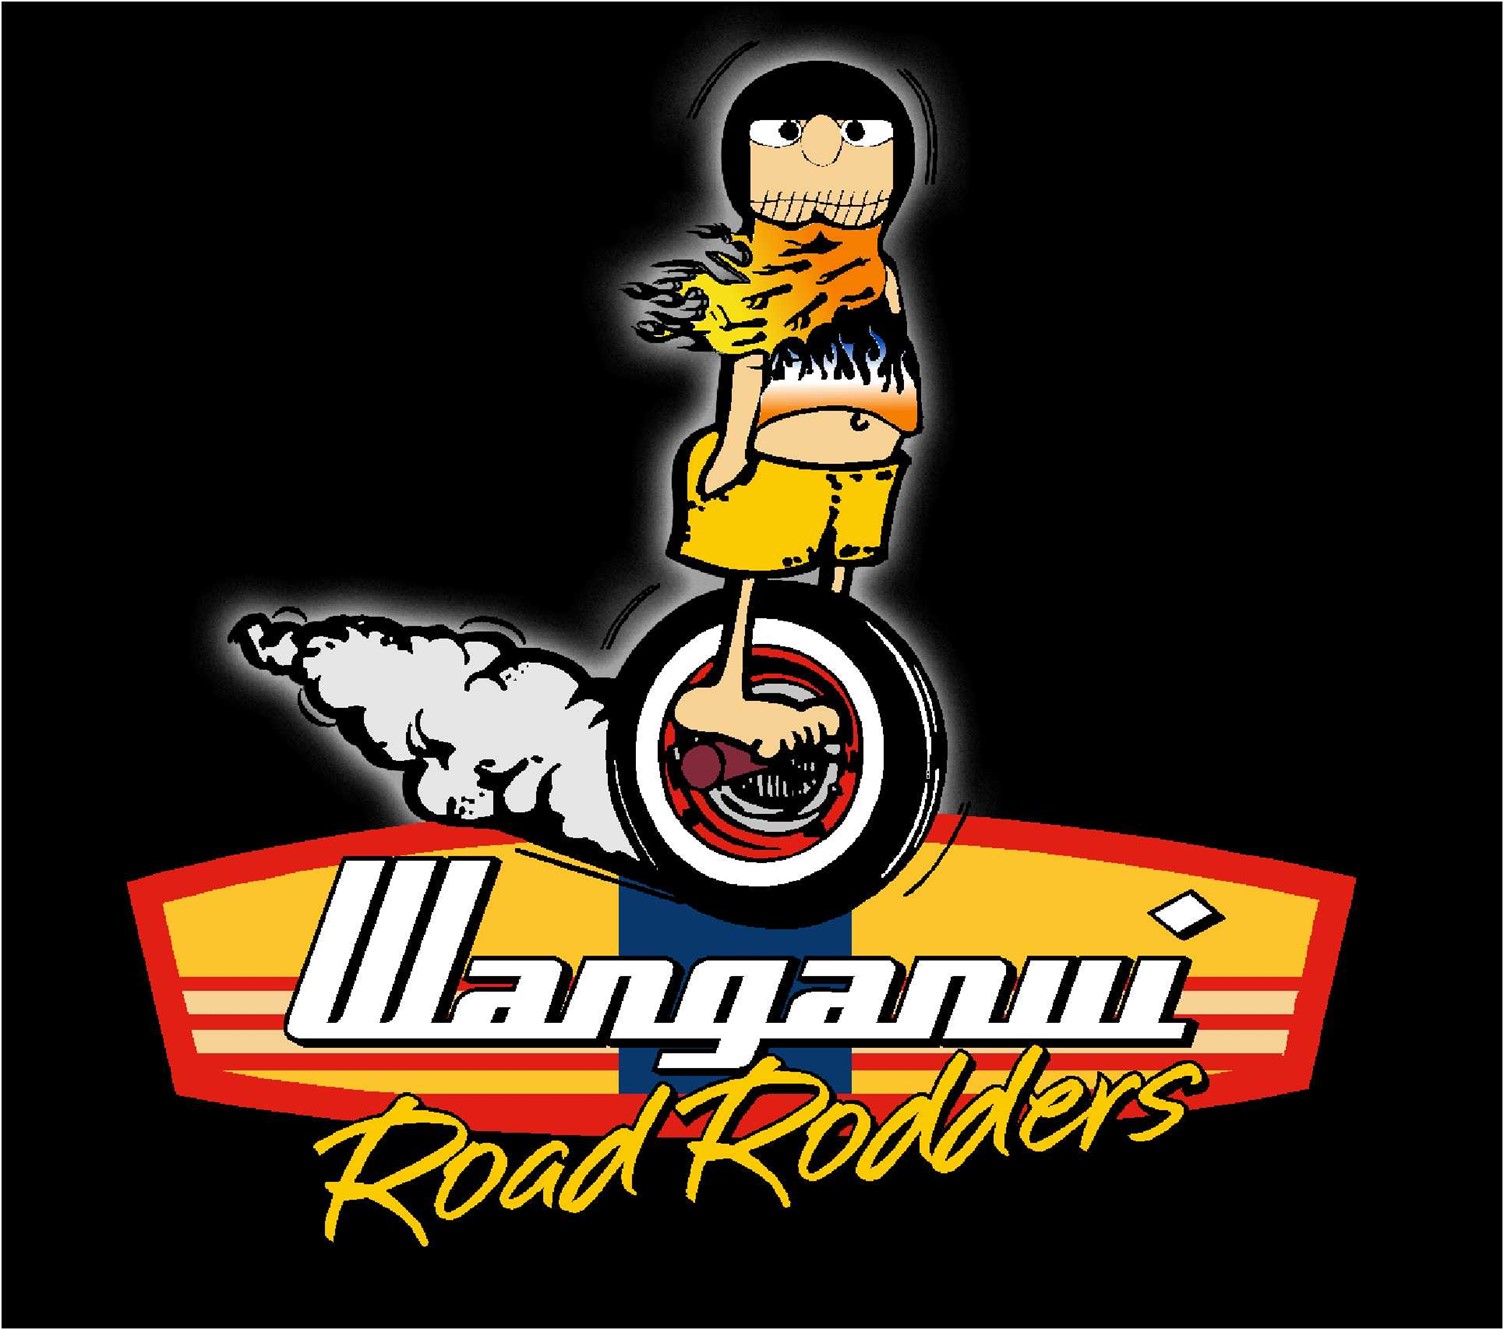 Wanganui Road Rodders - Open Air Display